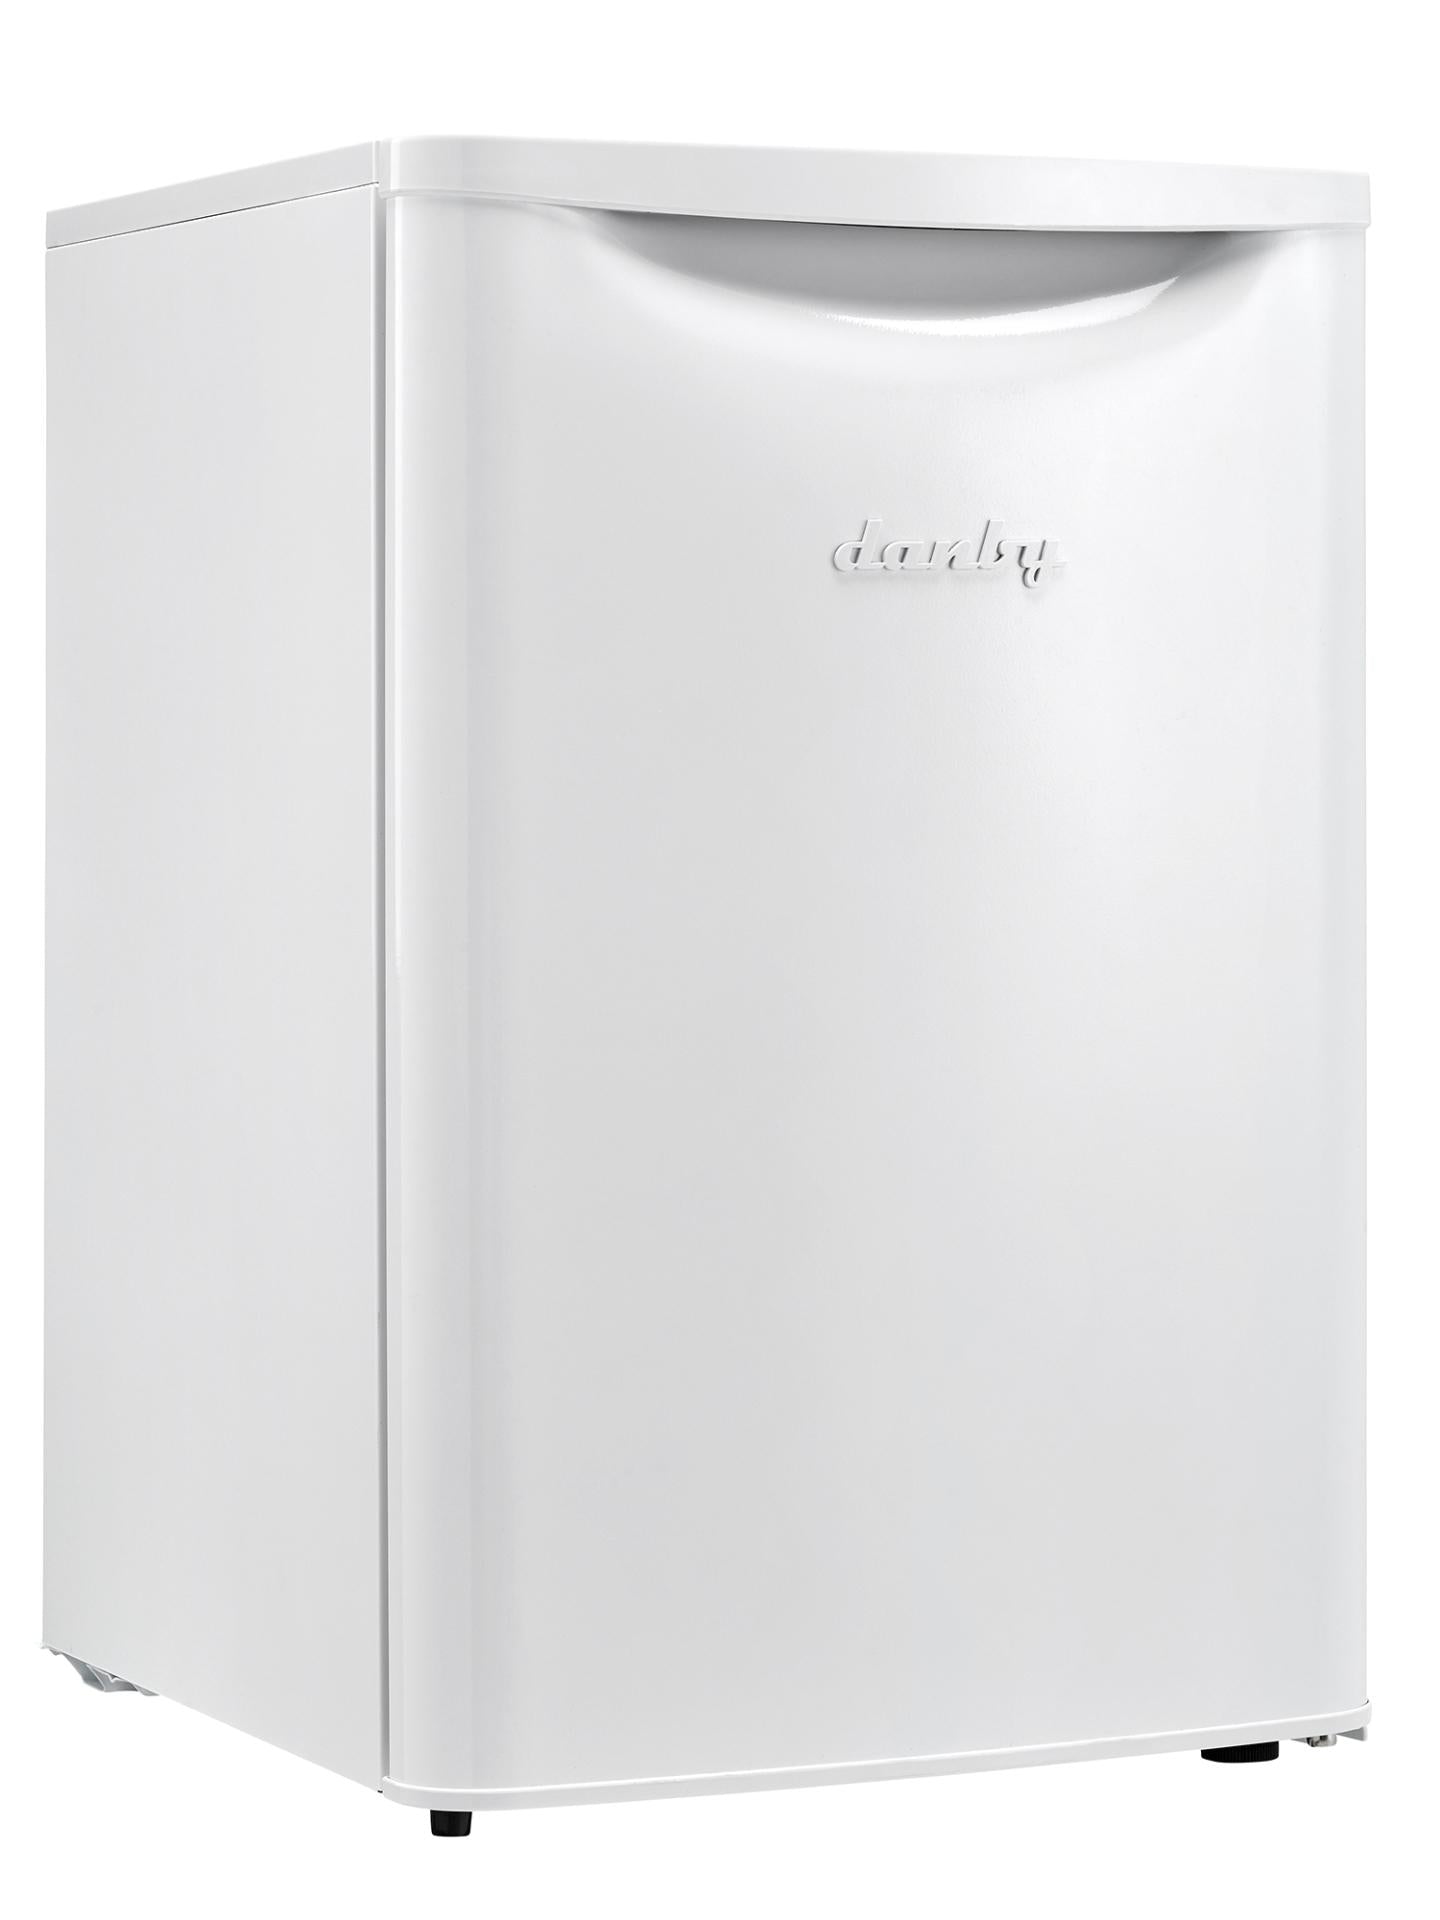 Danby DAR026A2WDB Danby 2.6 Cu. Ft. Contemporary Classic Compact Refrigerator